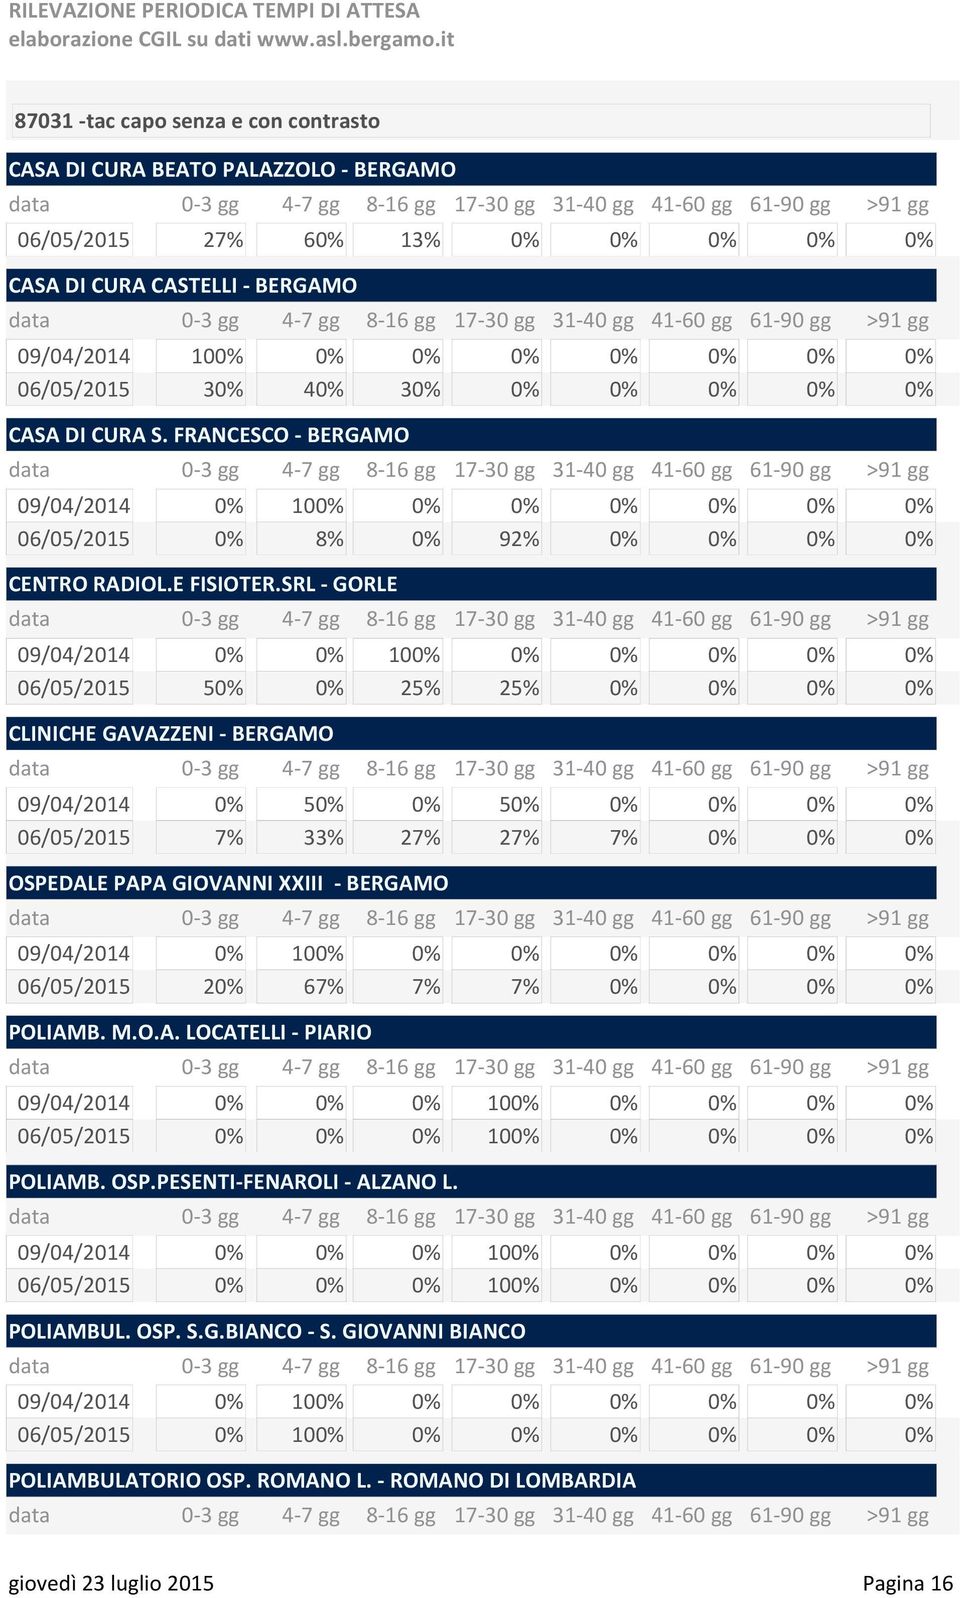 SRL - GORLE 06/05/2015 50% 0% 25% 25% 0% 0% 0% 0% CLINICHE GAVAZZENI - BERGAMO 09/04/2014 0% 50% 0% 50% 0% 0% 0% 0% 06/05/2015 7% 33% 27% 27% 7% 0% 0% 0% OSPEDALE PAPA GIOVANNI XXIII - BERGAMO